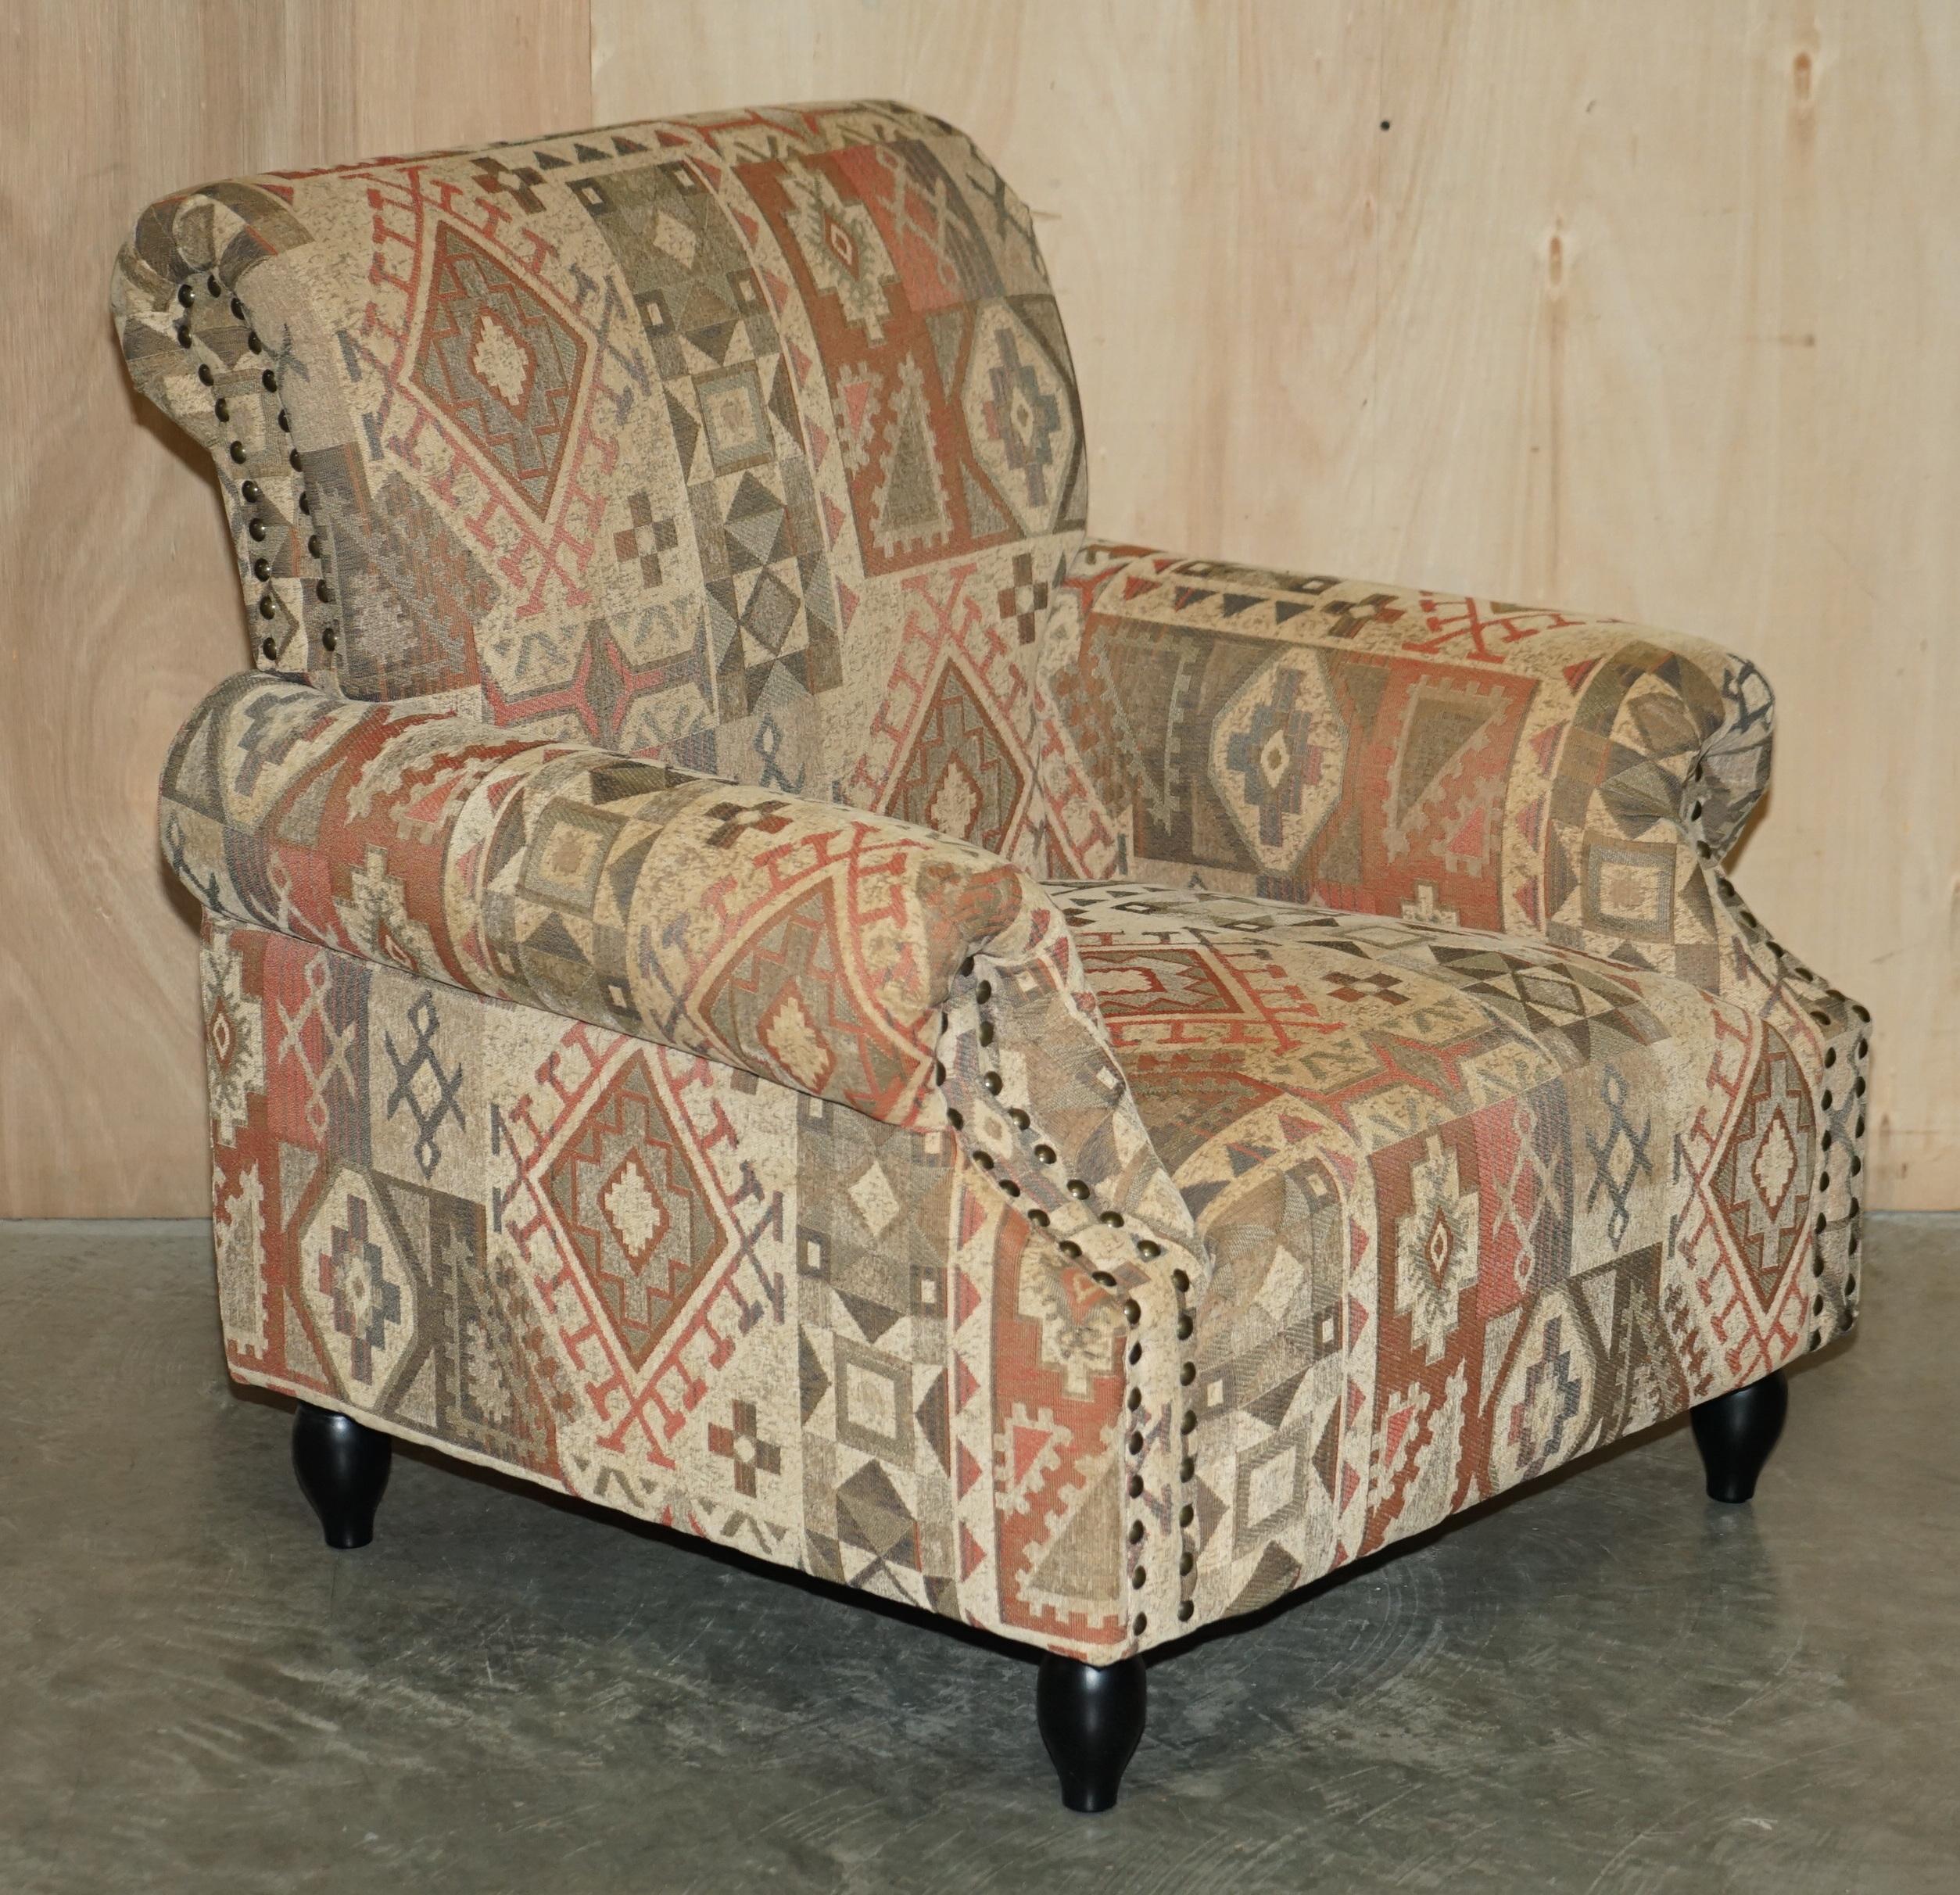 Nous sommes ravis d'offrir à la vente ce fauteuil rembourré Kilim de style George Smith, fabriqué à la main en Angleterre, ainsi que le pouf assorti.

Une paire très belle et bien faite, tapissée de kilim de style aztèque, la finition est tout à